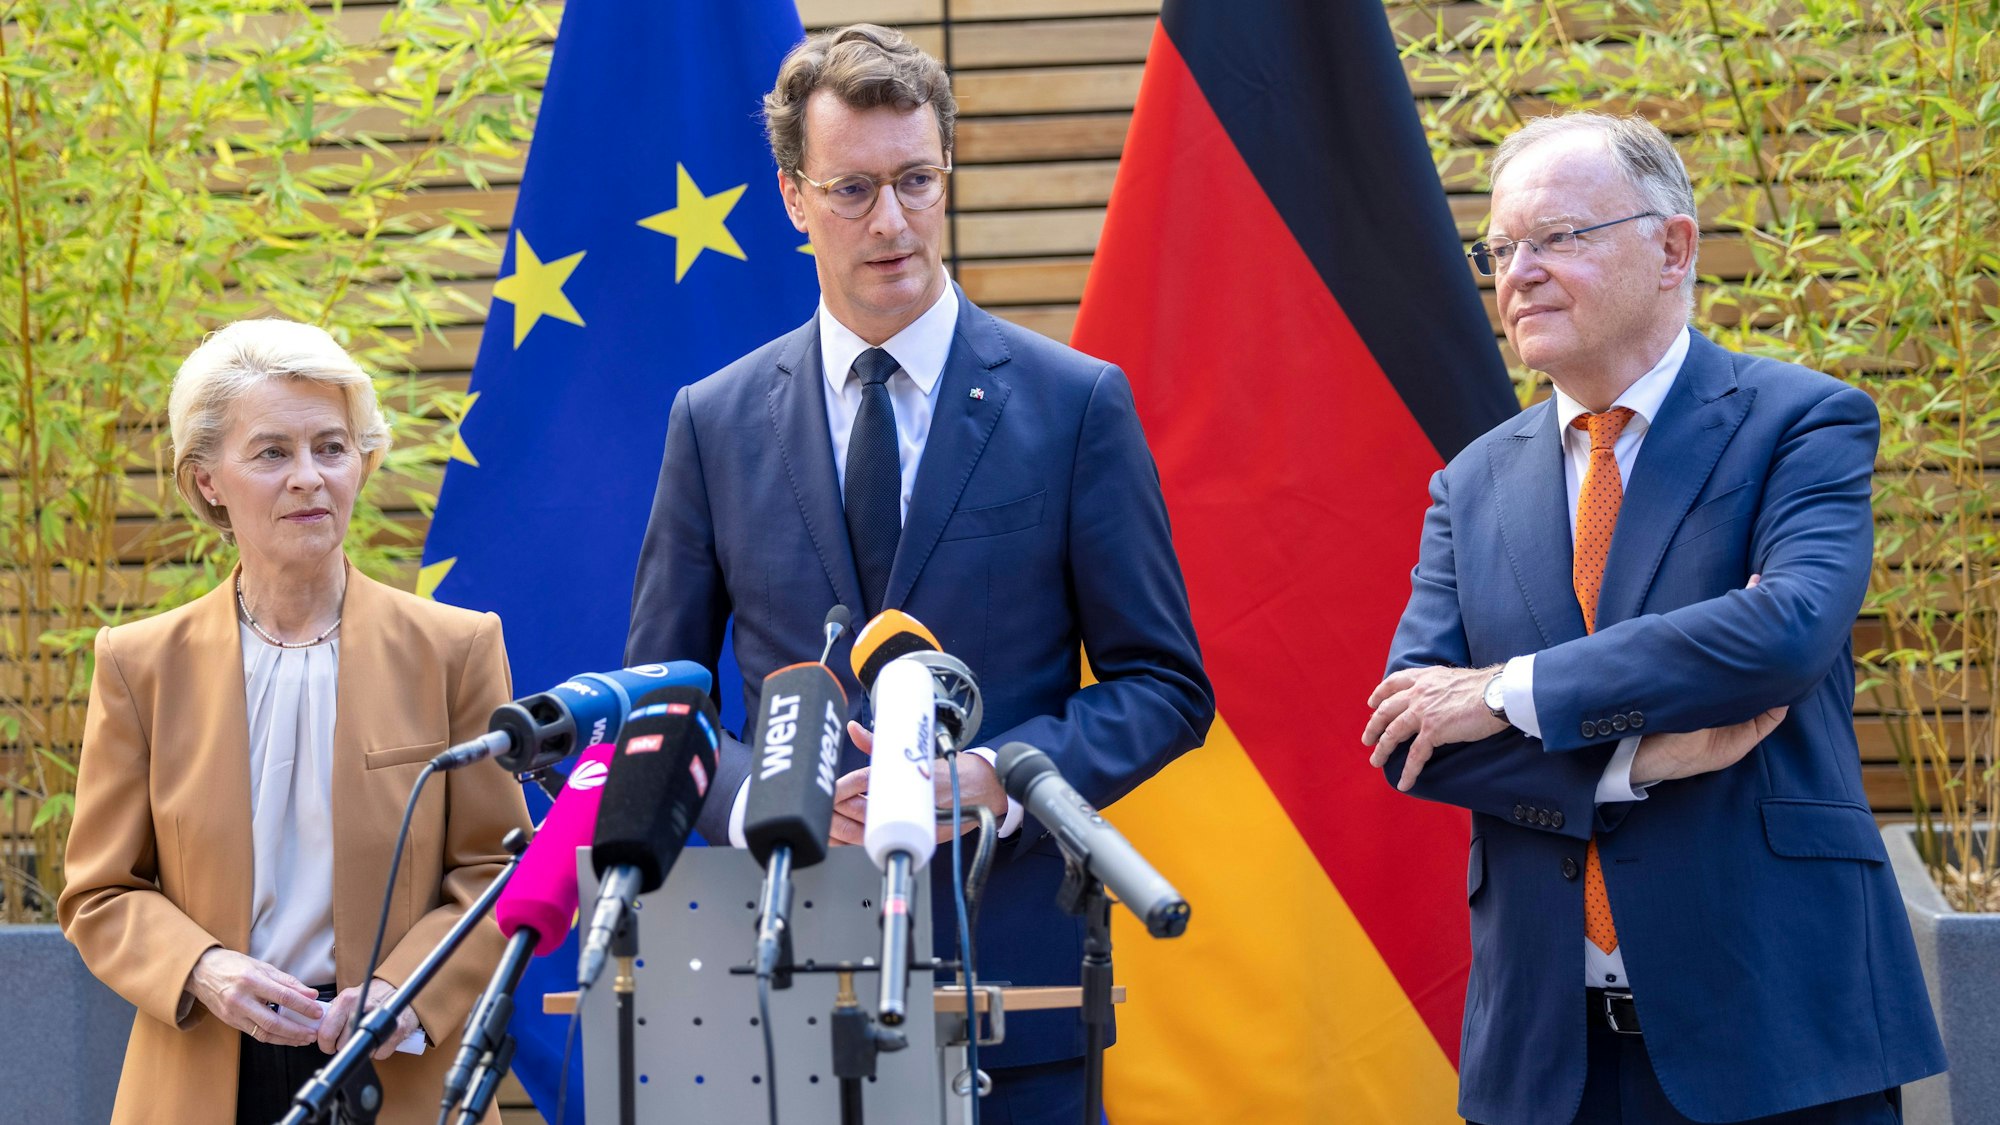 Hendrik Wüst (CDU, M), Ministerpräsident von Nordrhein-Westfalen, spricht bei einem Statement neben Ursula von der Leyen, Präsidentin der Europäischen Kommission, und Stephan Weil (SPD, r), Ministerpräsident von Niedersachsen.